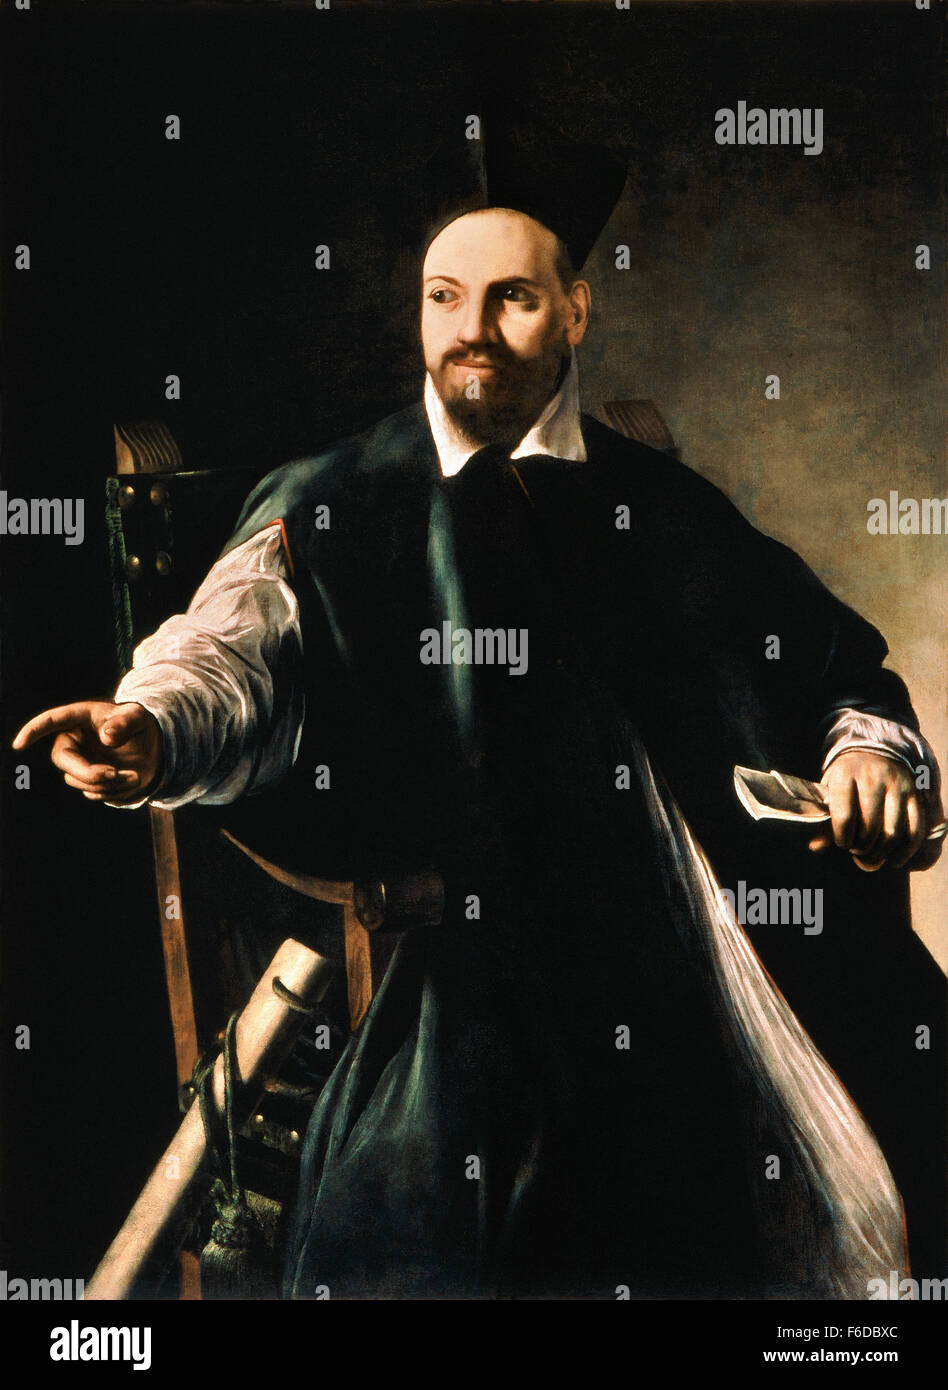 Michelangelo Merisi da Caravaggio - Portrait of Maffeo Barberini Stock Photo